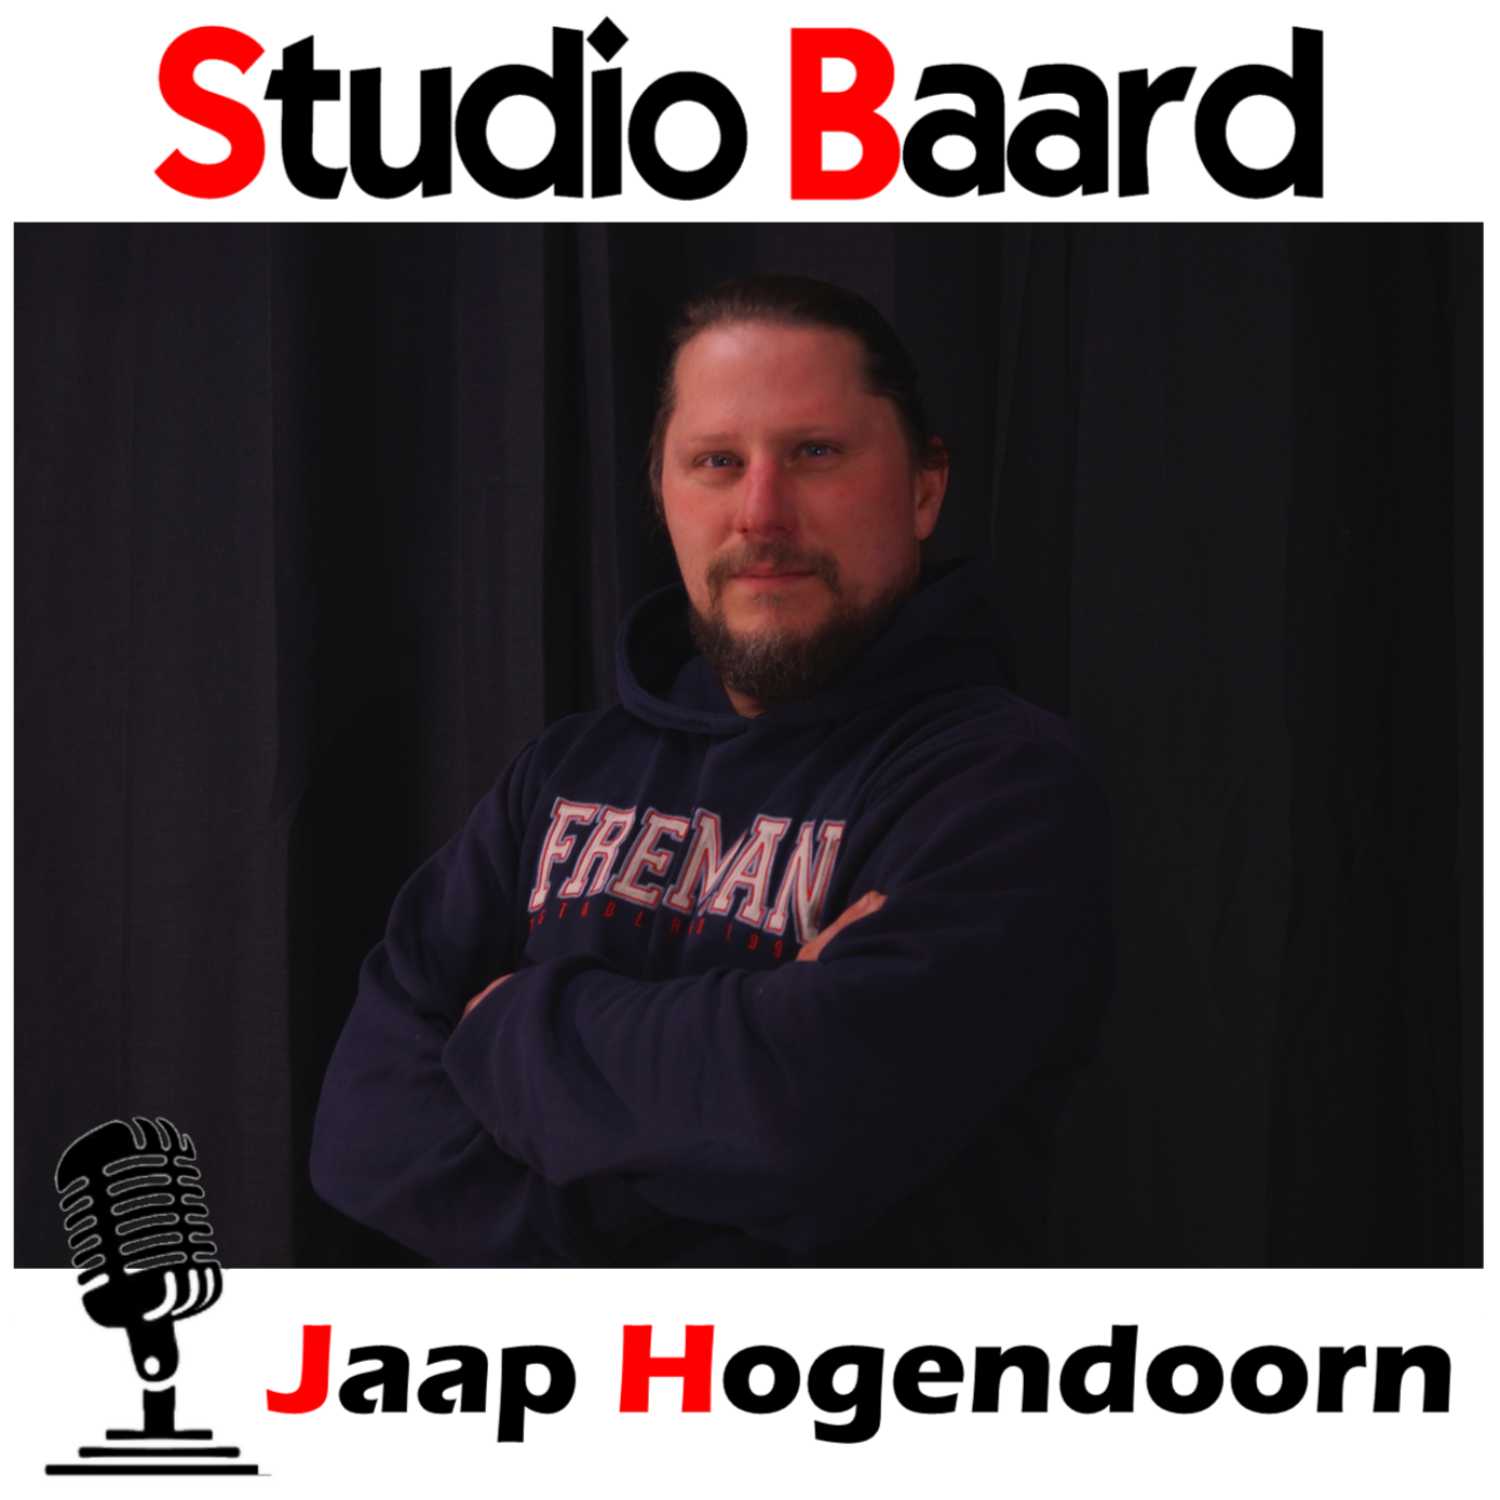 Studio Baard met Jaap Hogendoorn (deel 1)